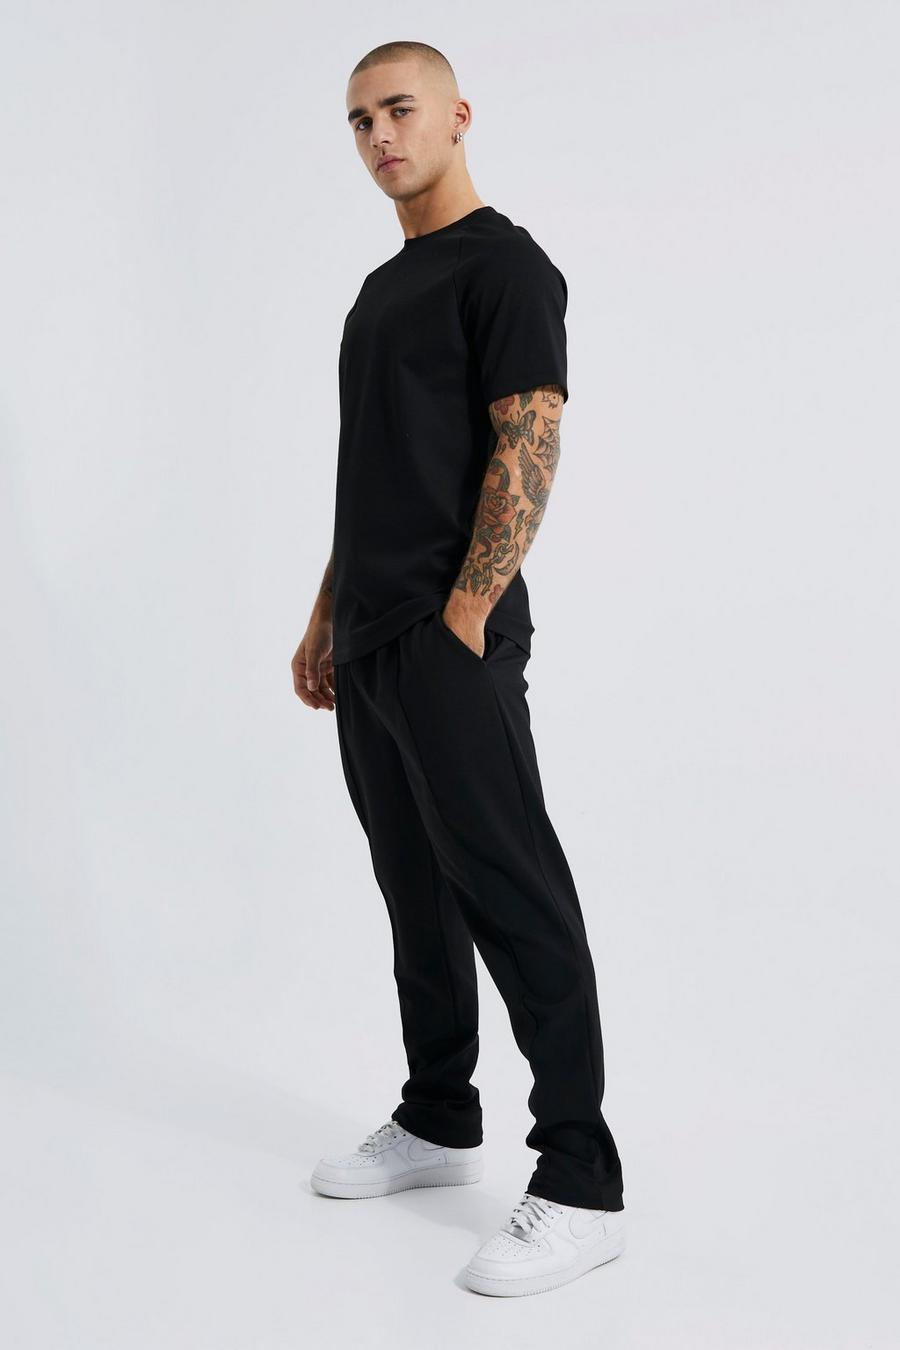 Black svart T-shirt och mjukisbyxor med dekorativa veck